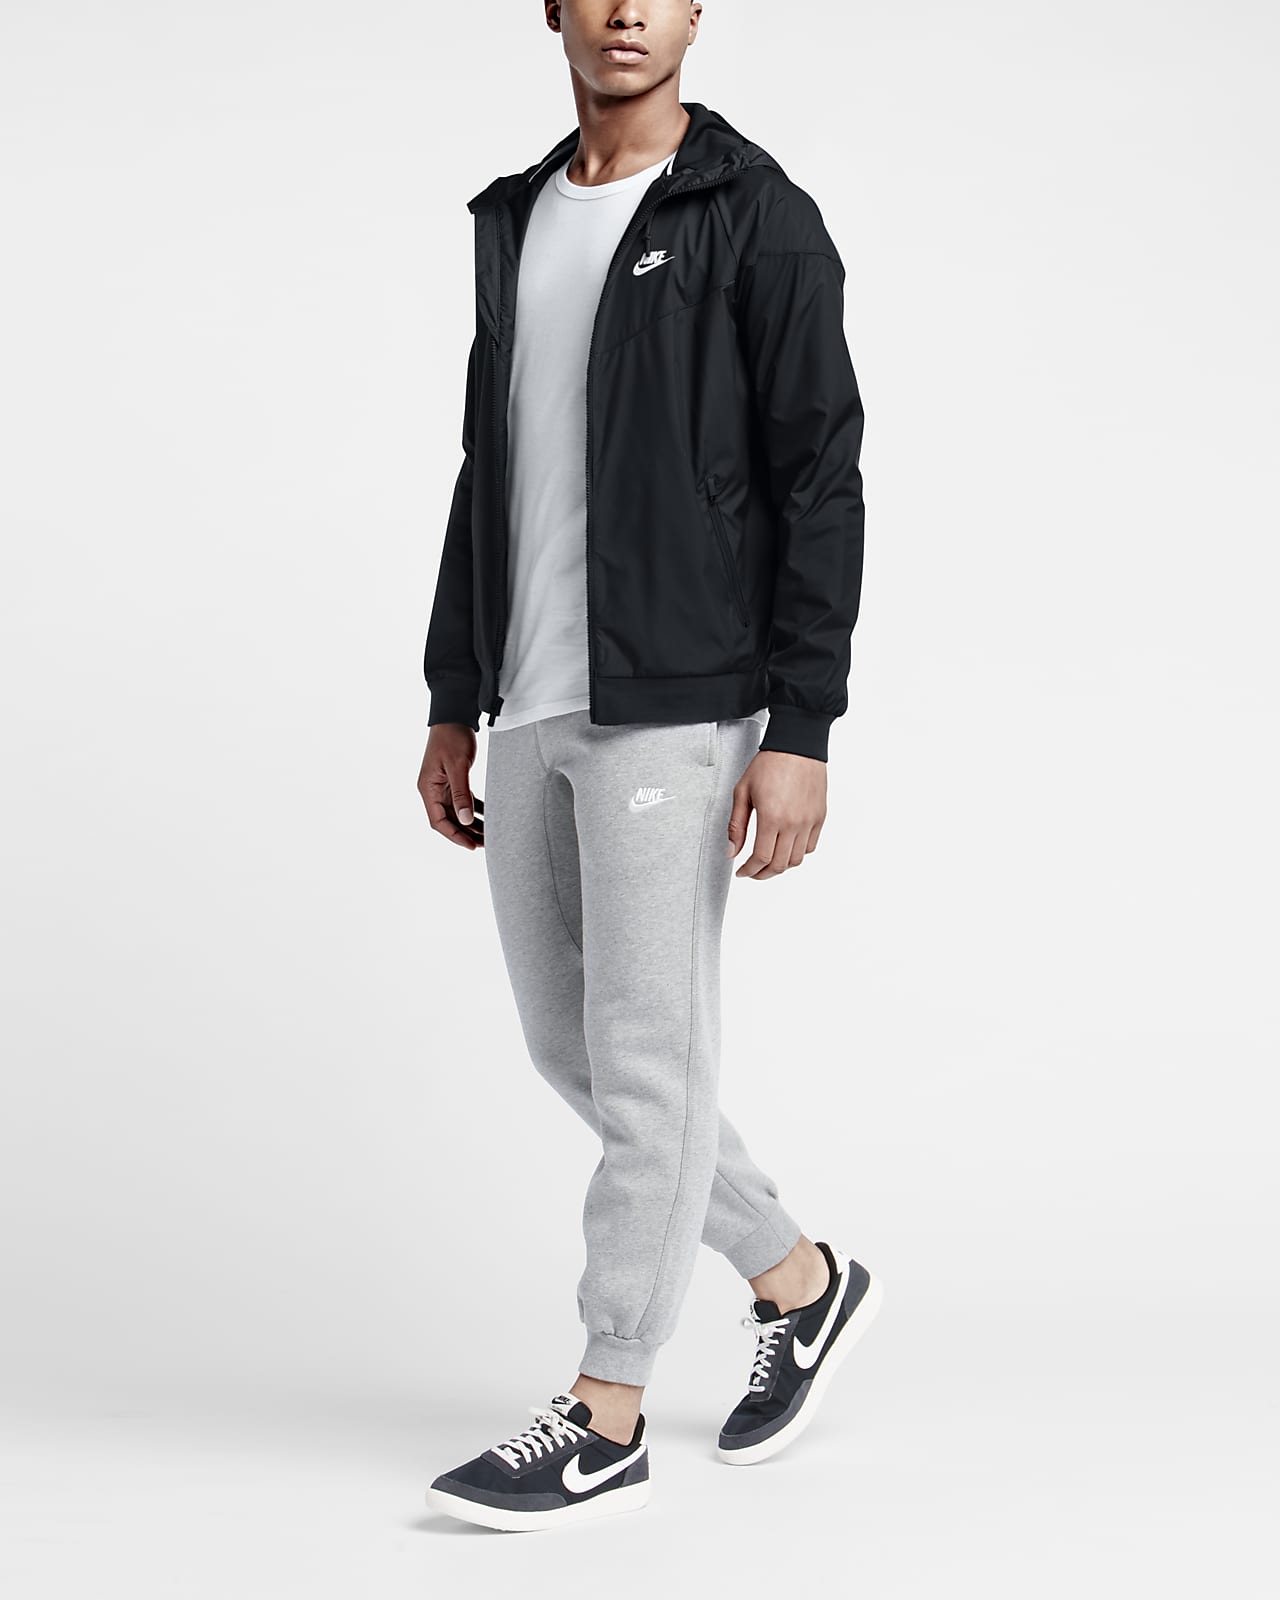 Nike Sportswear Windrunner Men's Jacket.